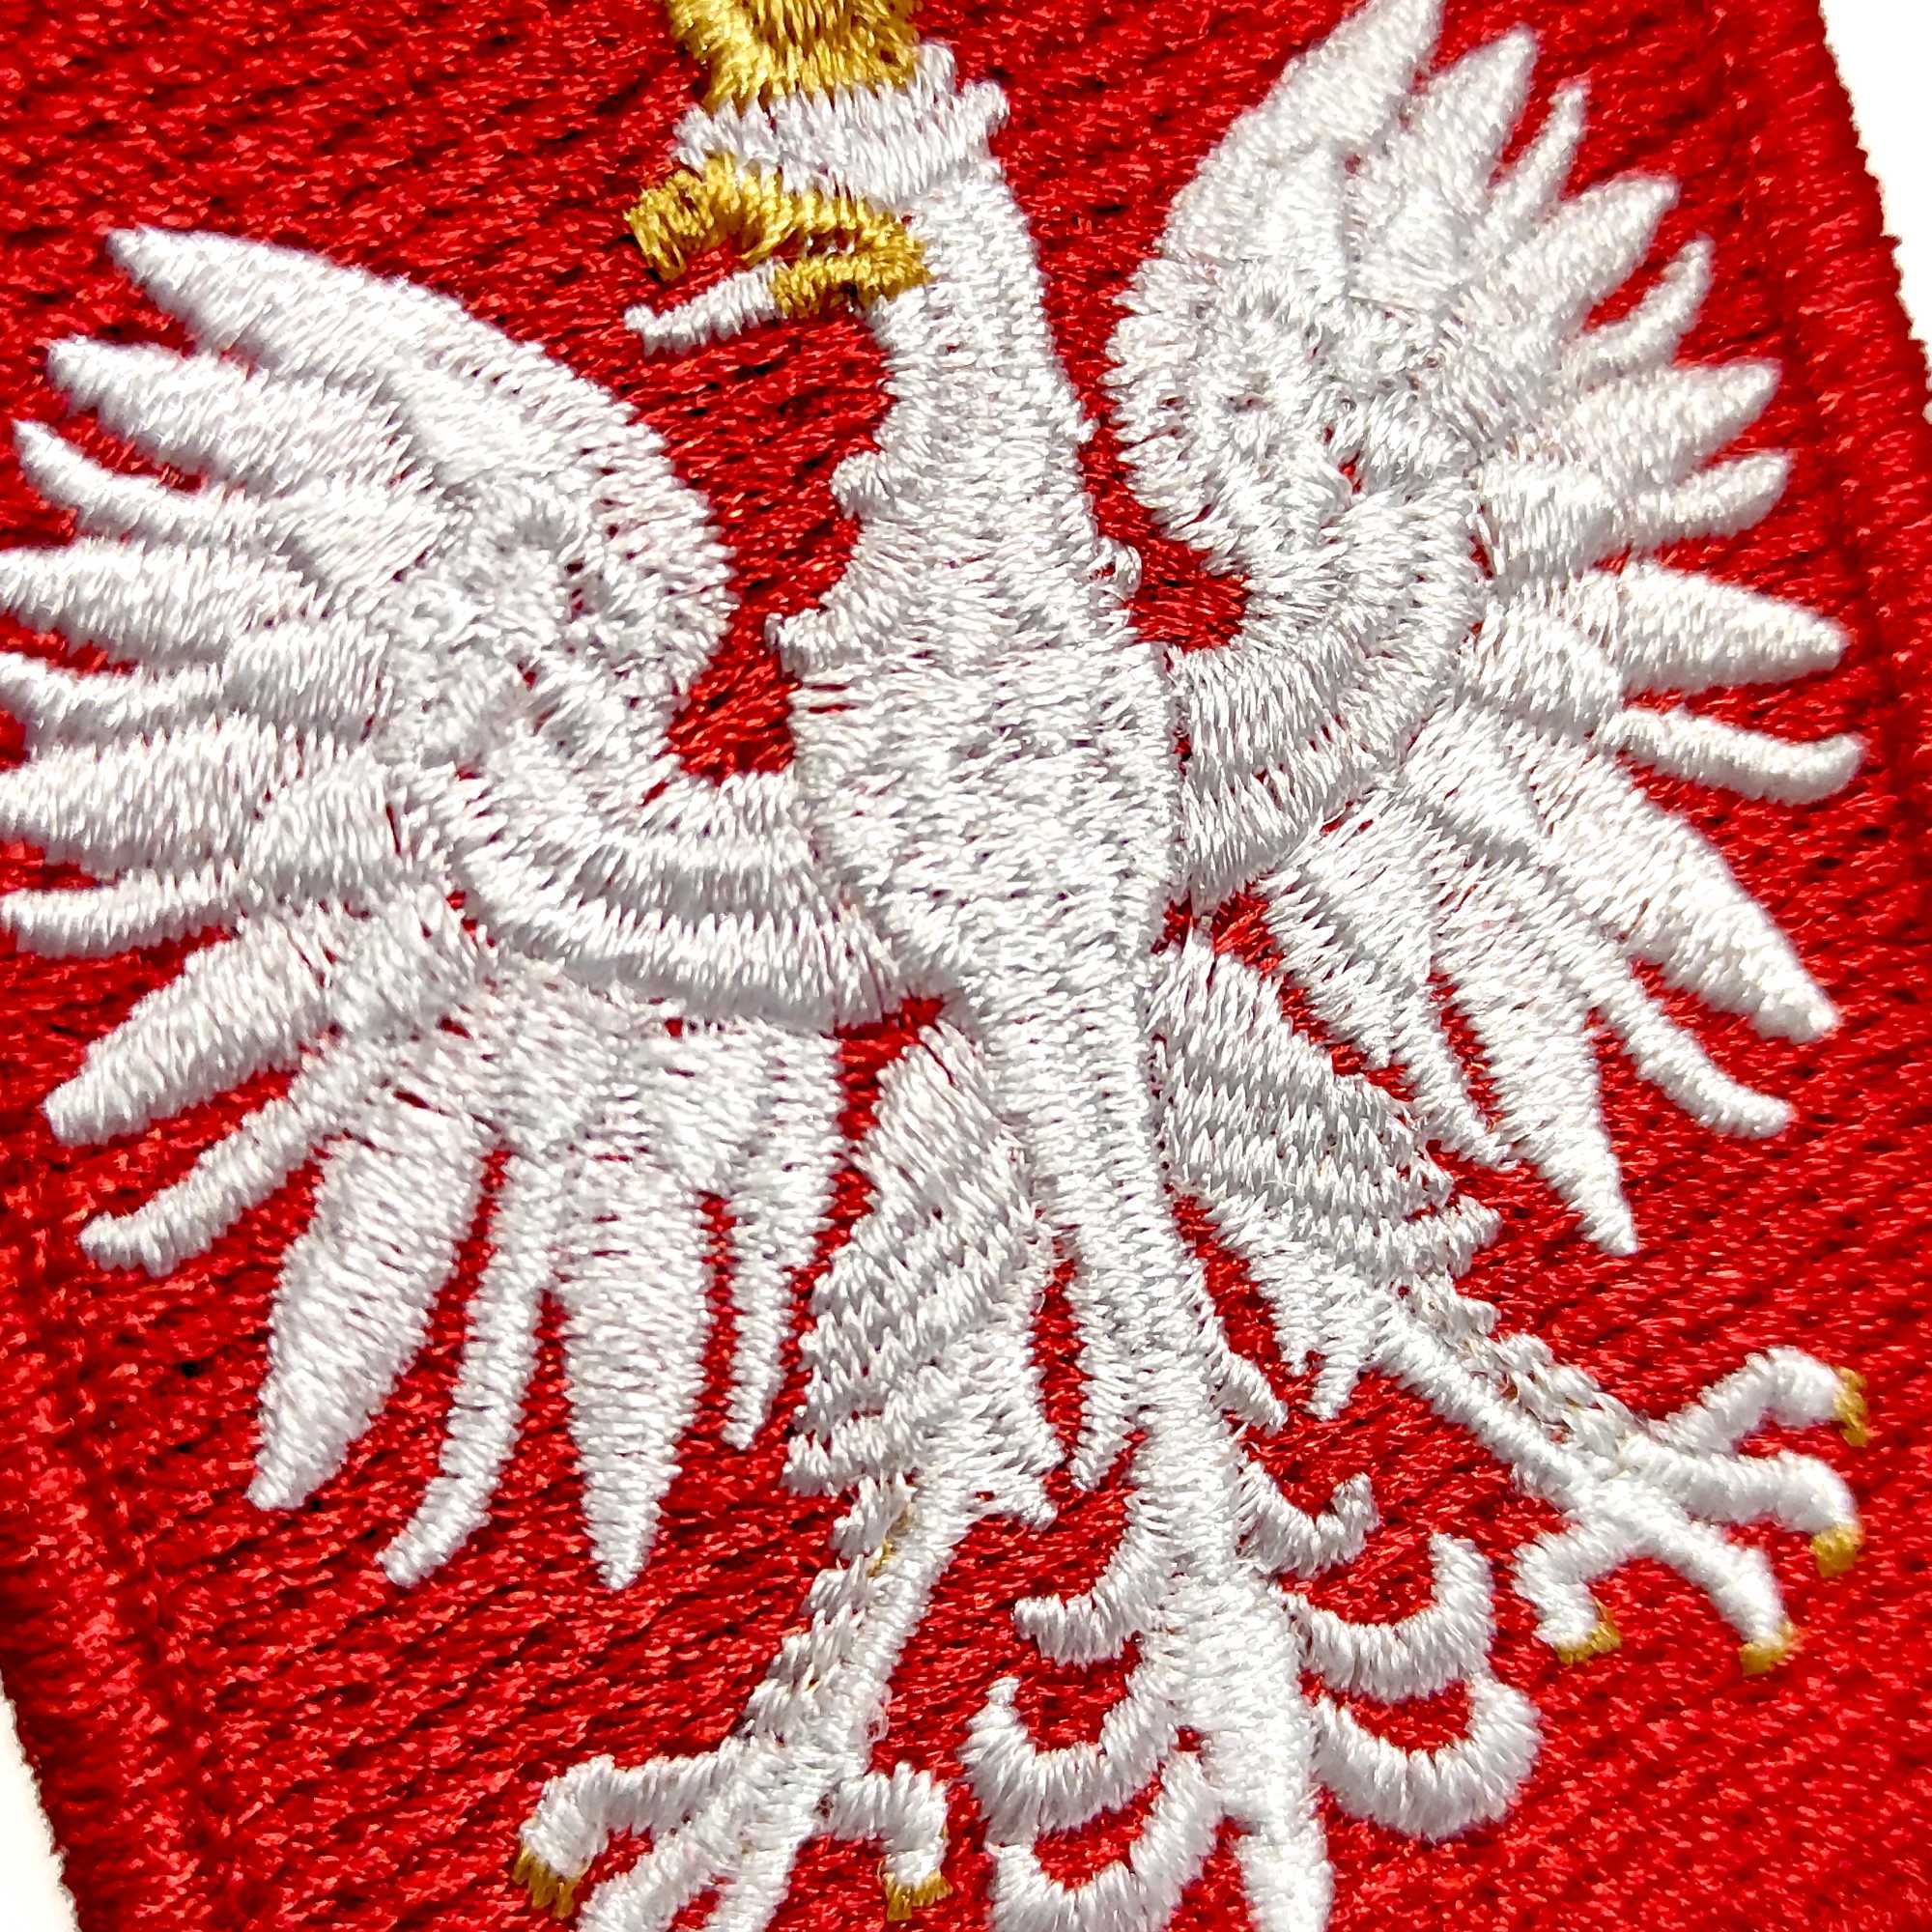 4szt. naszywka haftowana godło Polski, herb, emblemat, 55x66mm